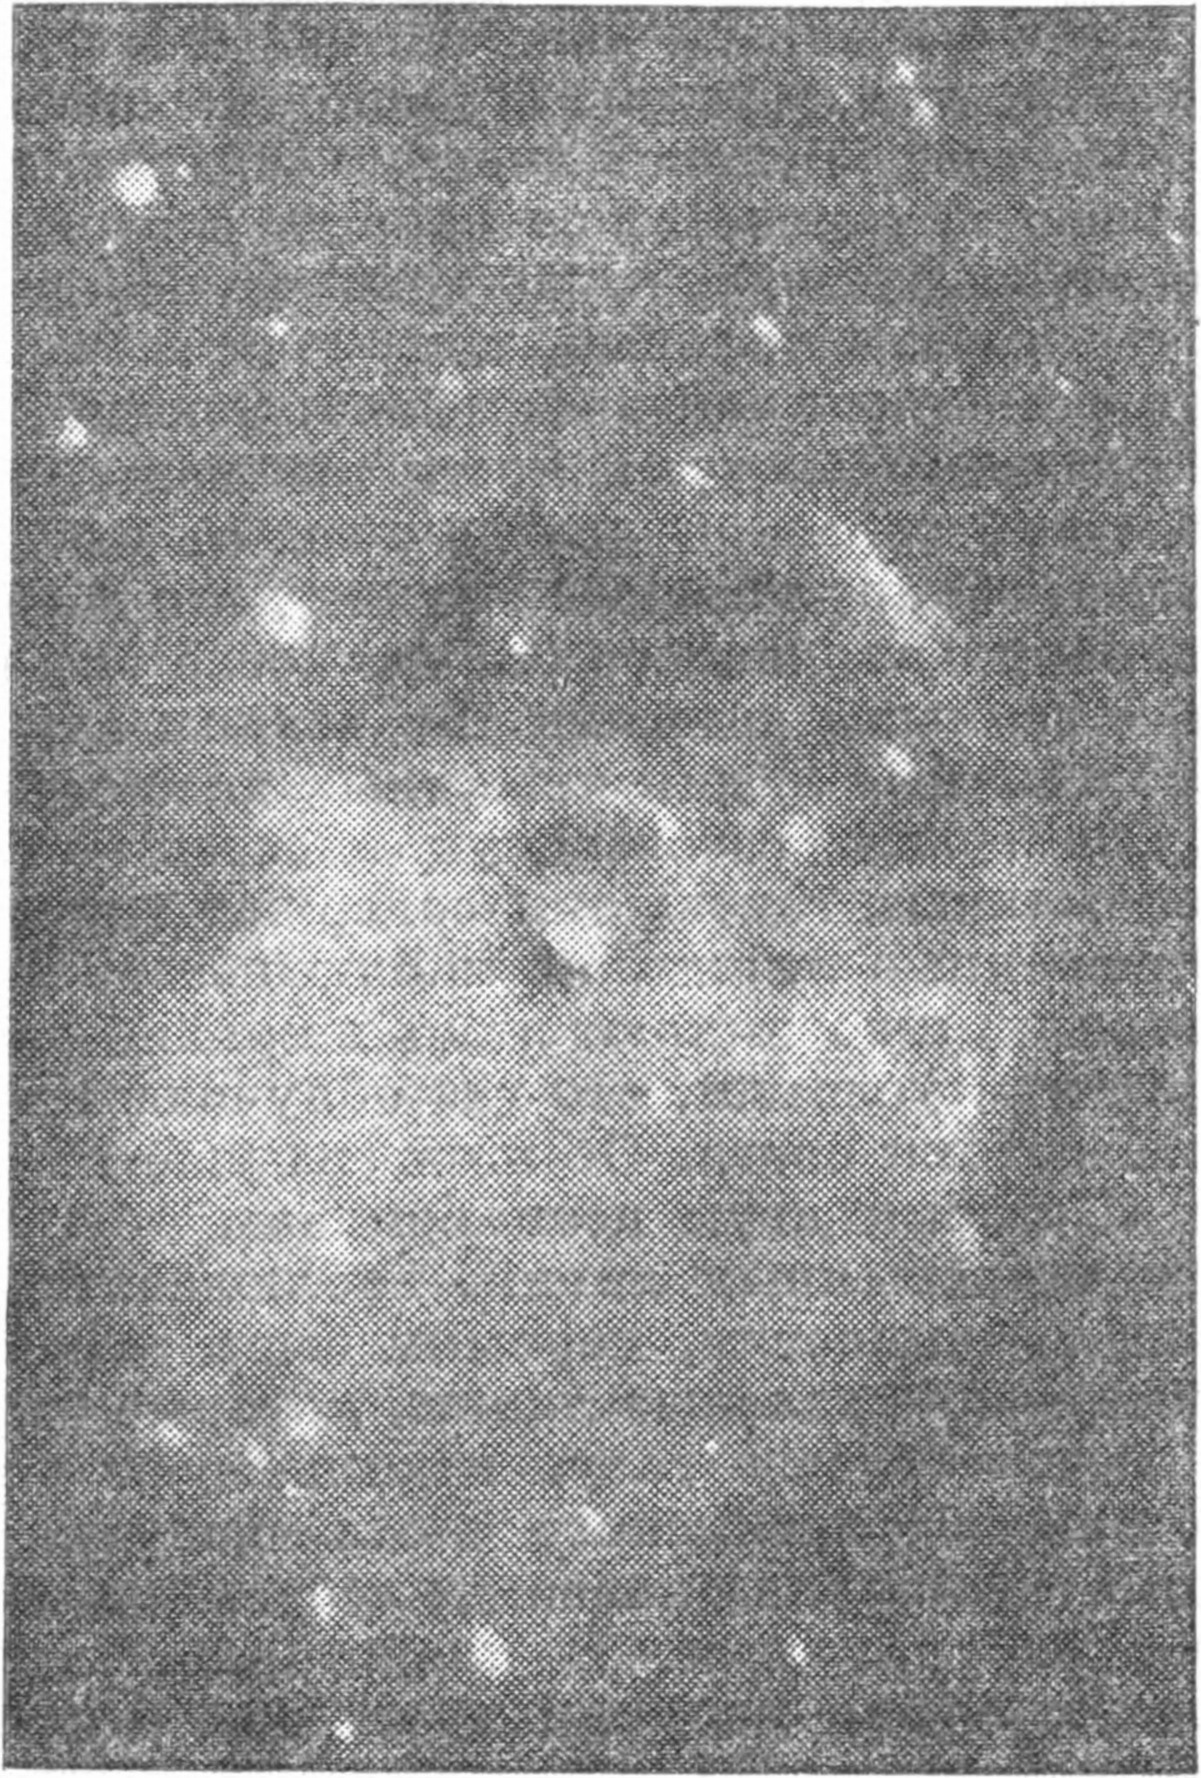 Рис. 174. Планетарная туманность в созвездии Лисички. (Фотография автора.)